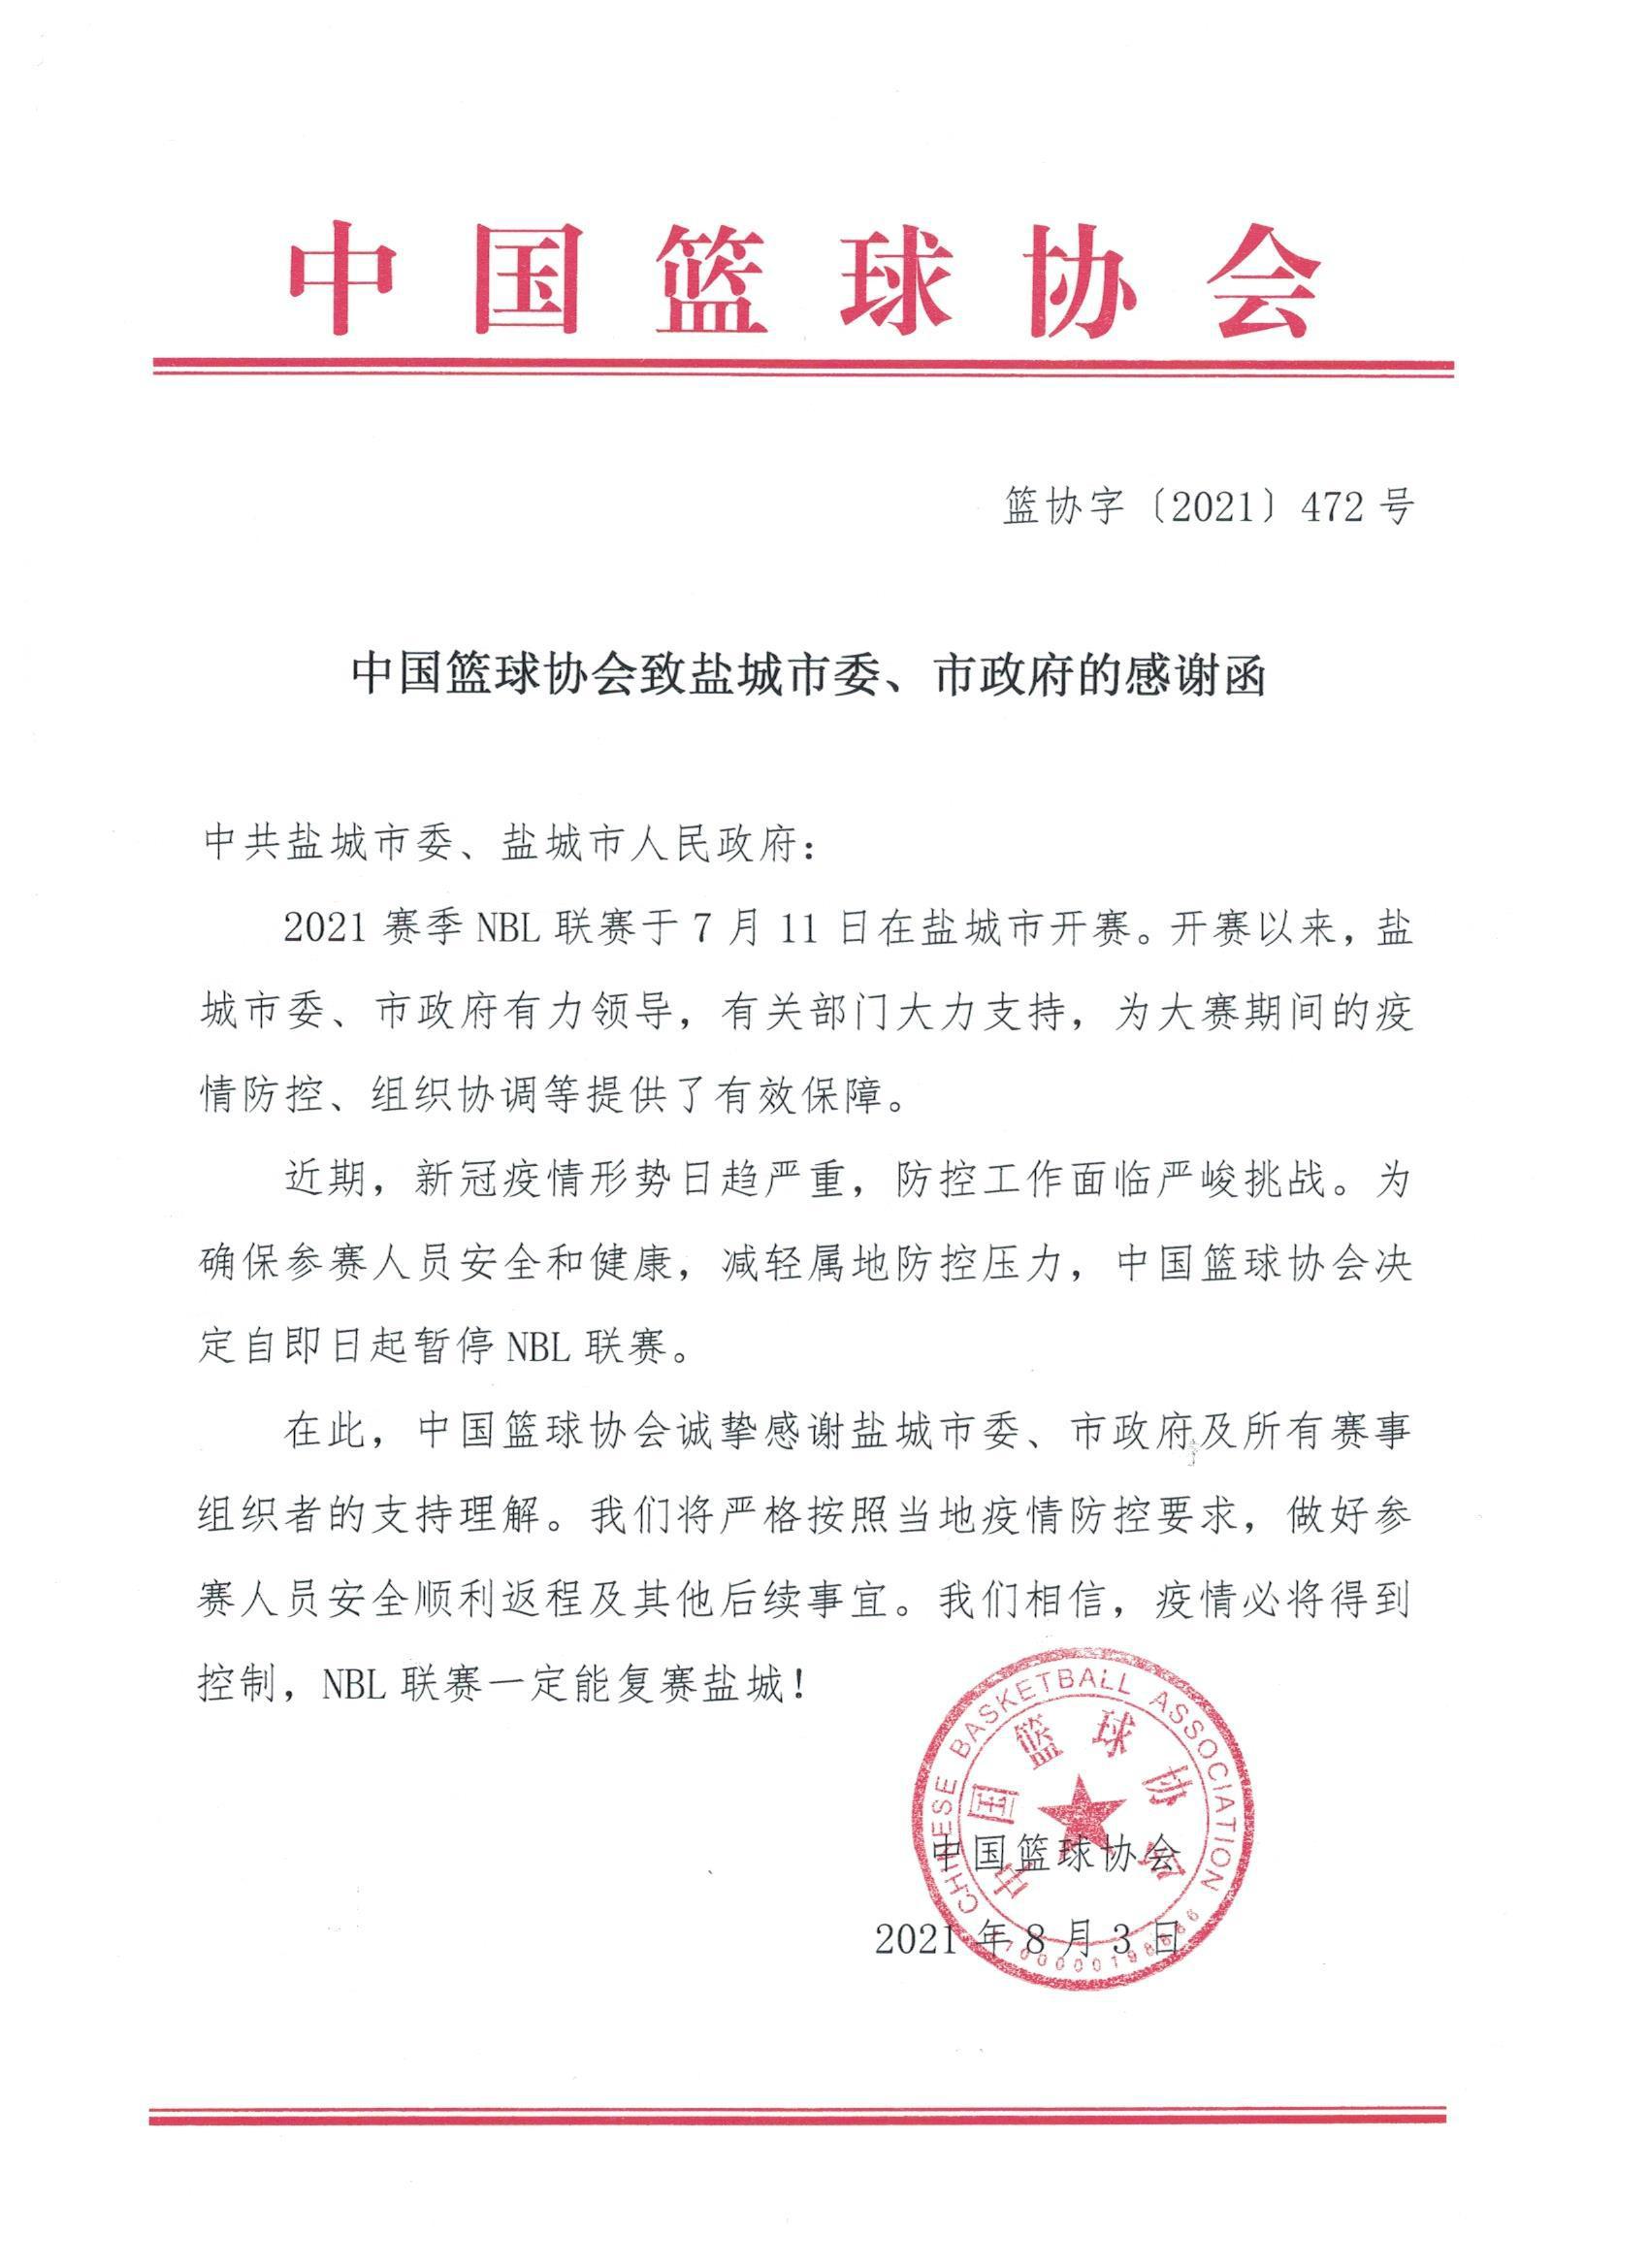 中国篮球协会：自即日起暂停NBL联赛